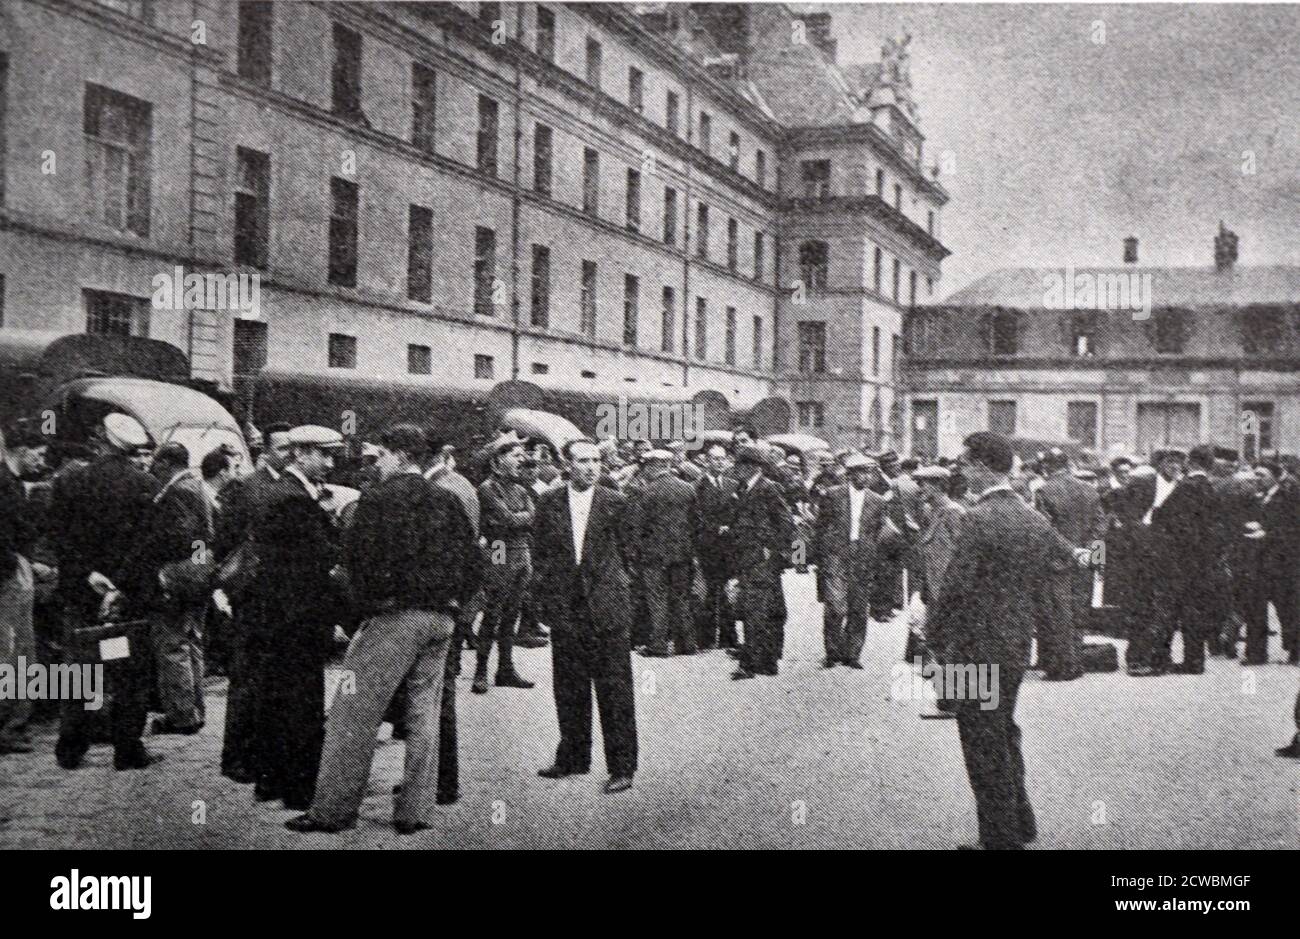 Foto in bianco e nero delle caserme militari nel cortile di Tour-Maubourg, Parigi, durante la prima ondata di mobilitazione delle forze armate francesi, settembre 1938. I reservisti e i civili stanno parlando per strada. Foto Stock